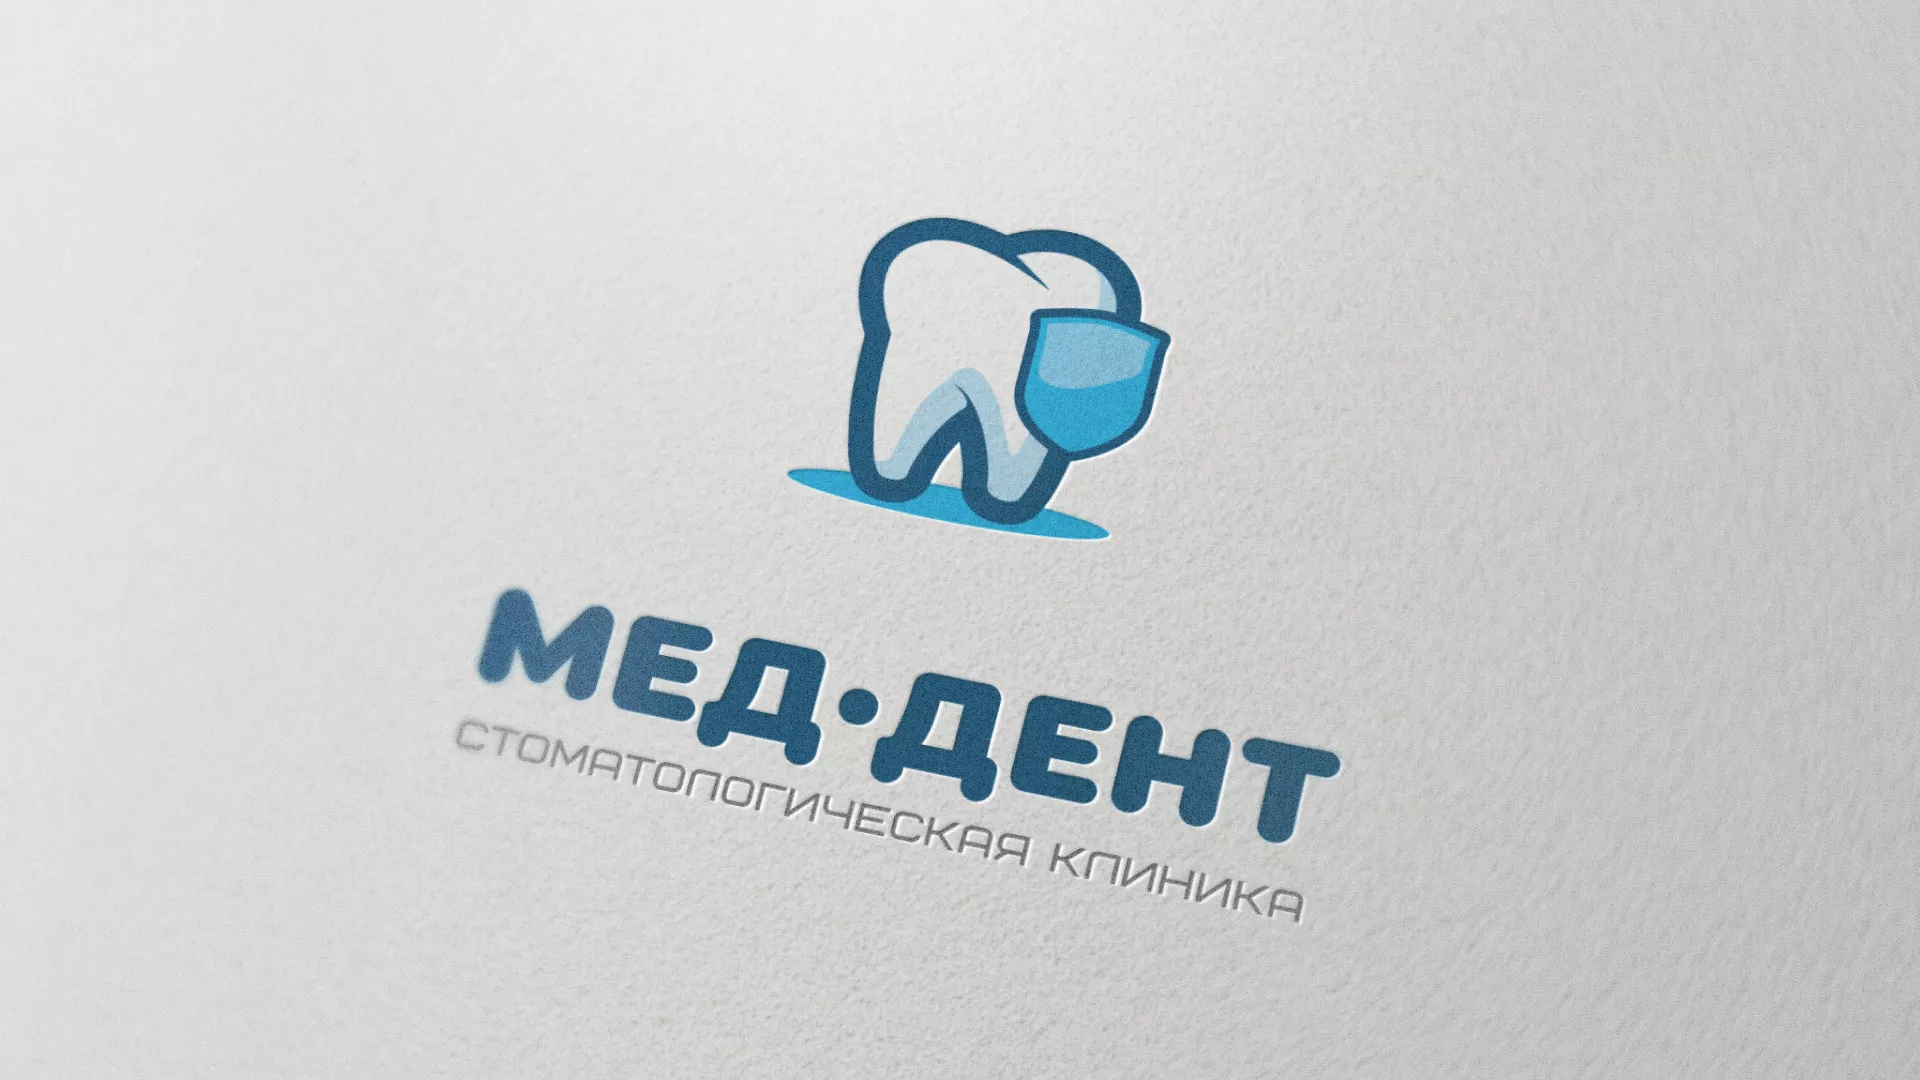 Разработка логотипа стоматологической клиники «МЕД-ДЕНТ» в Харабалях